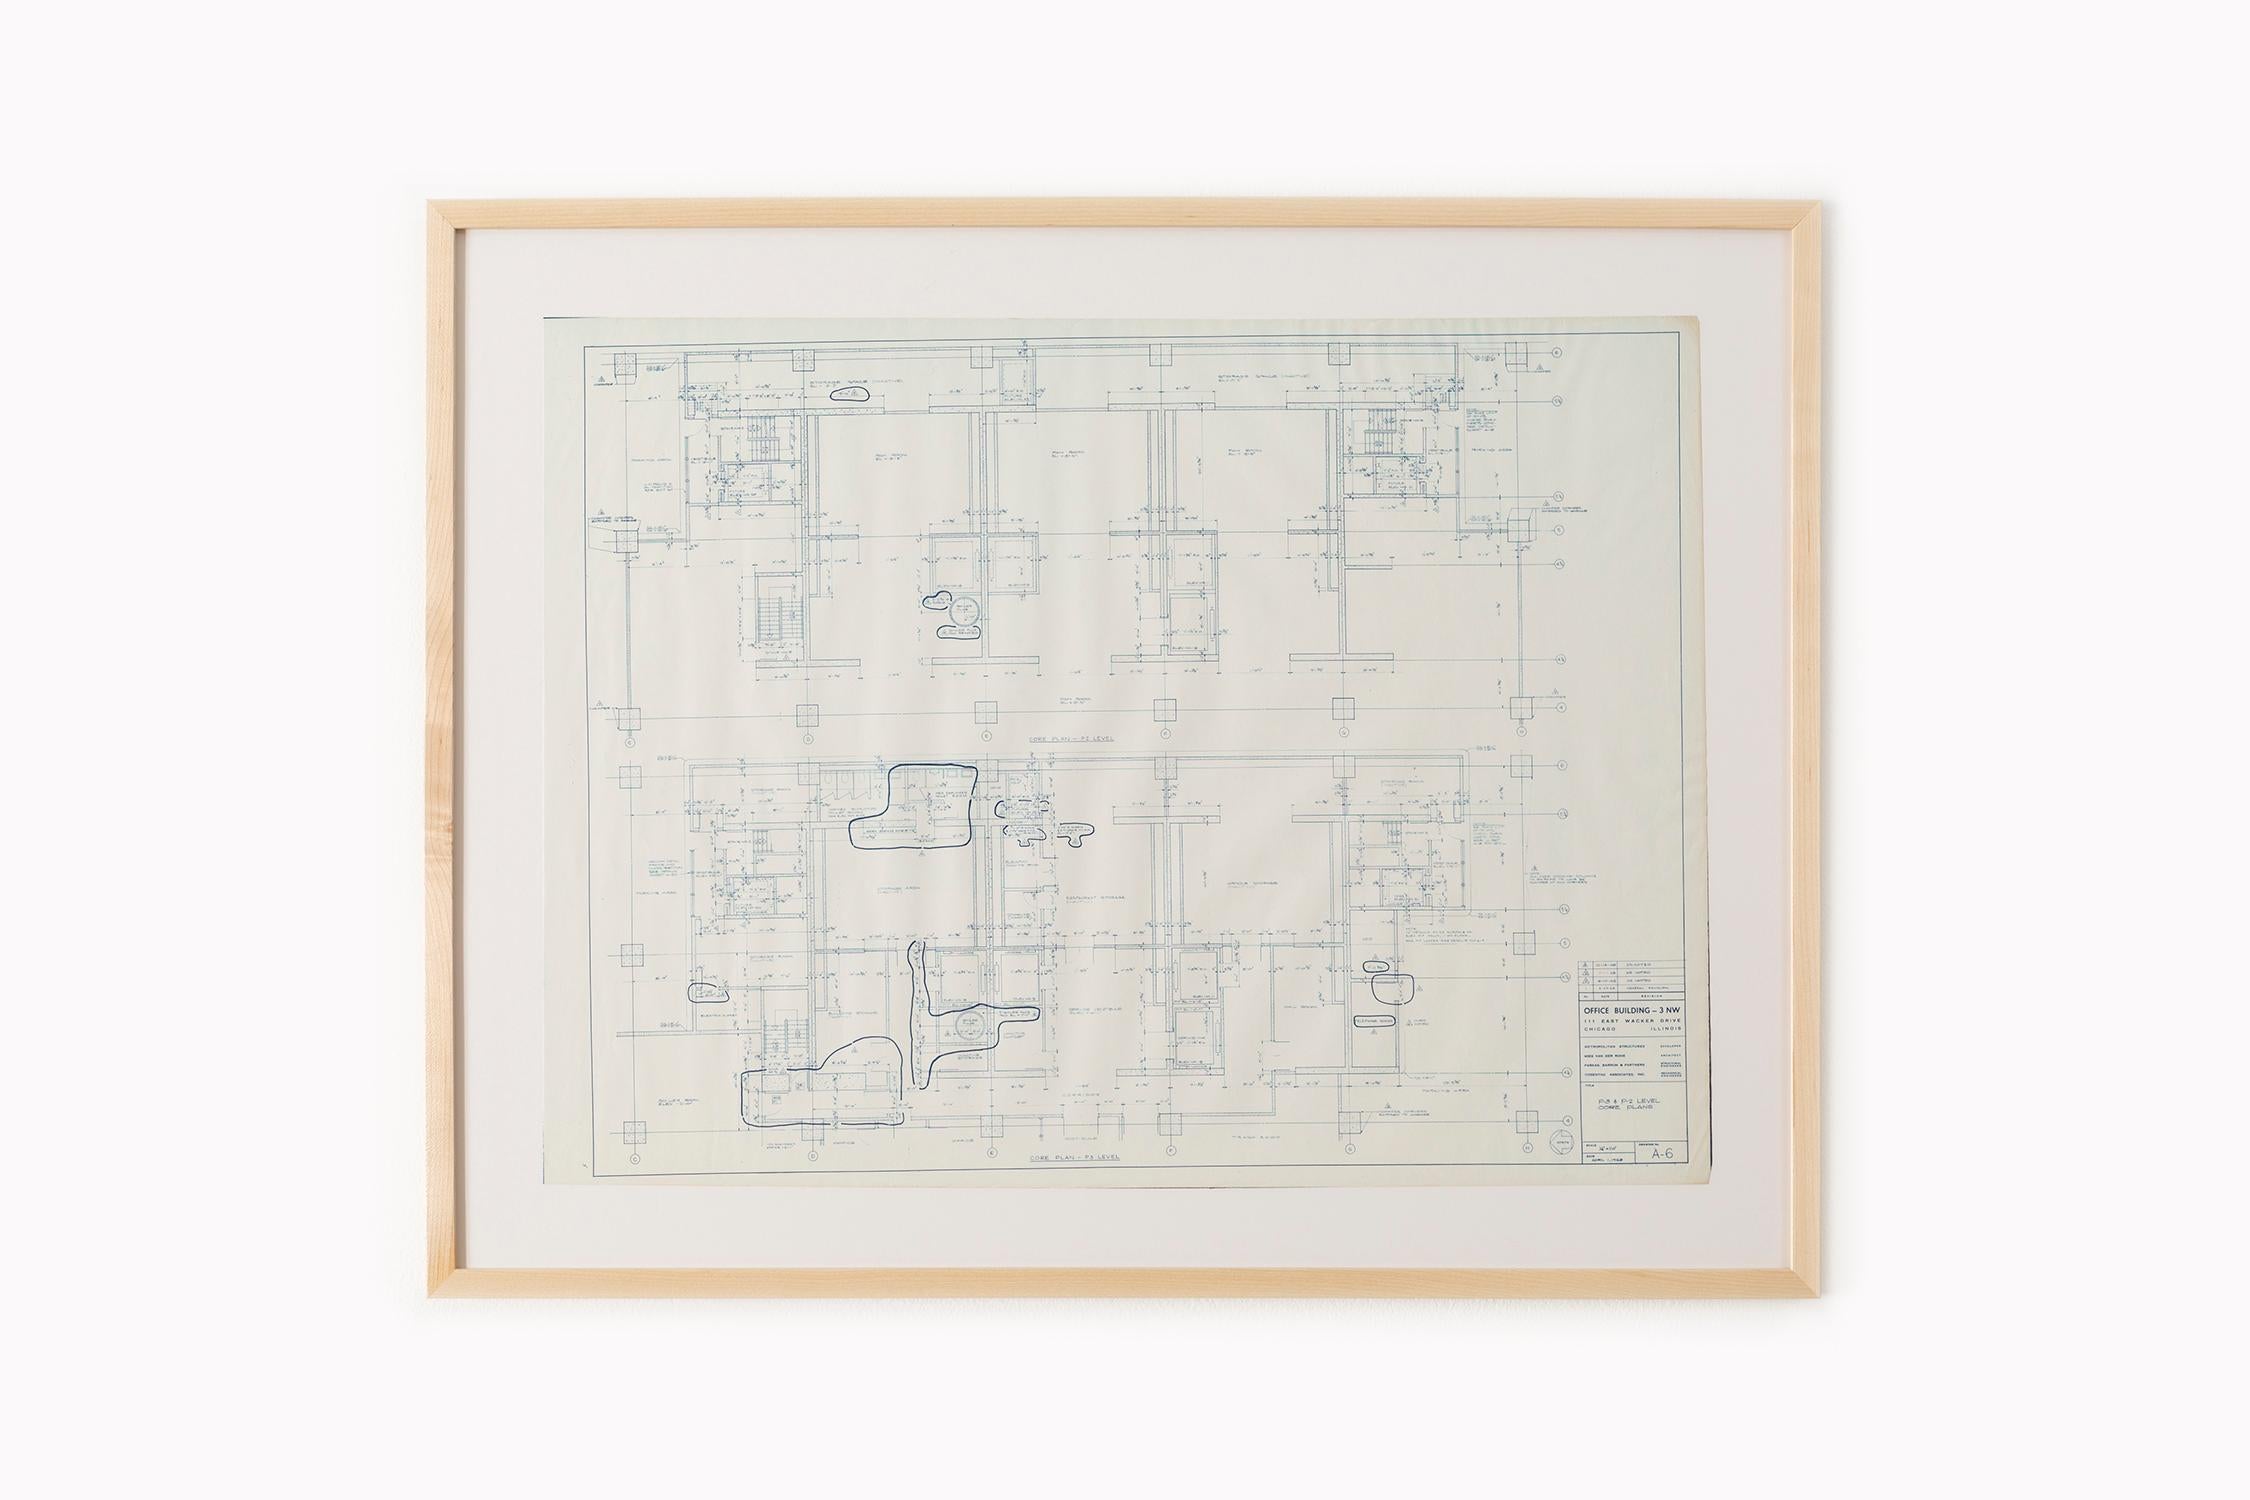 Mies van der Rohe Blueprint, Crown Hall, Chicago, 1954, North Platform 3